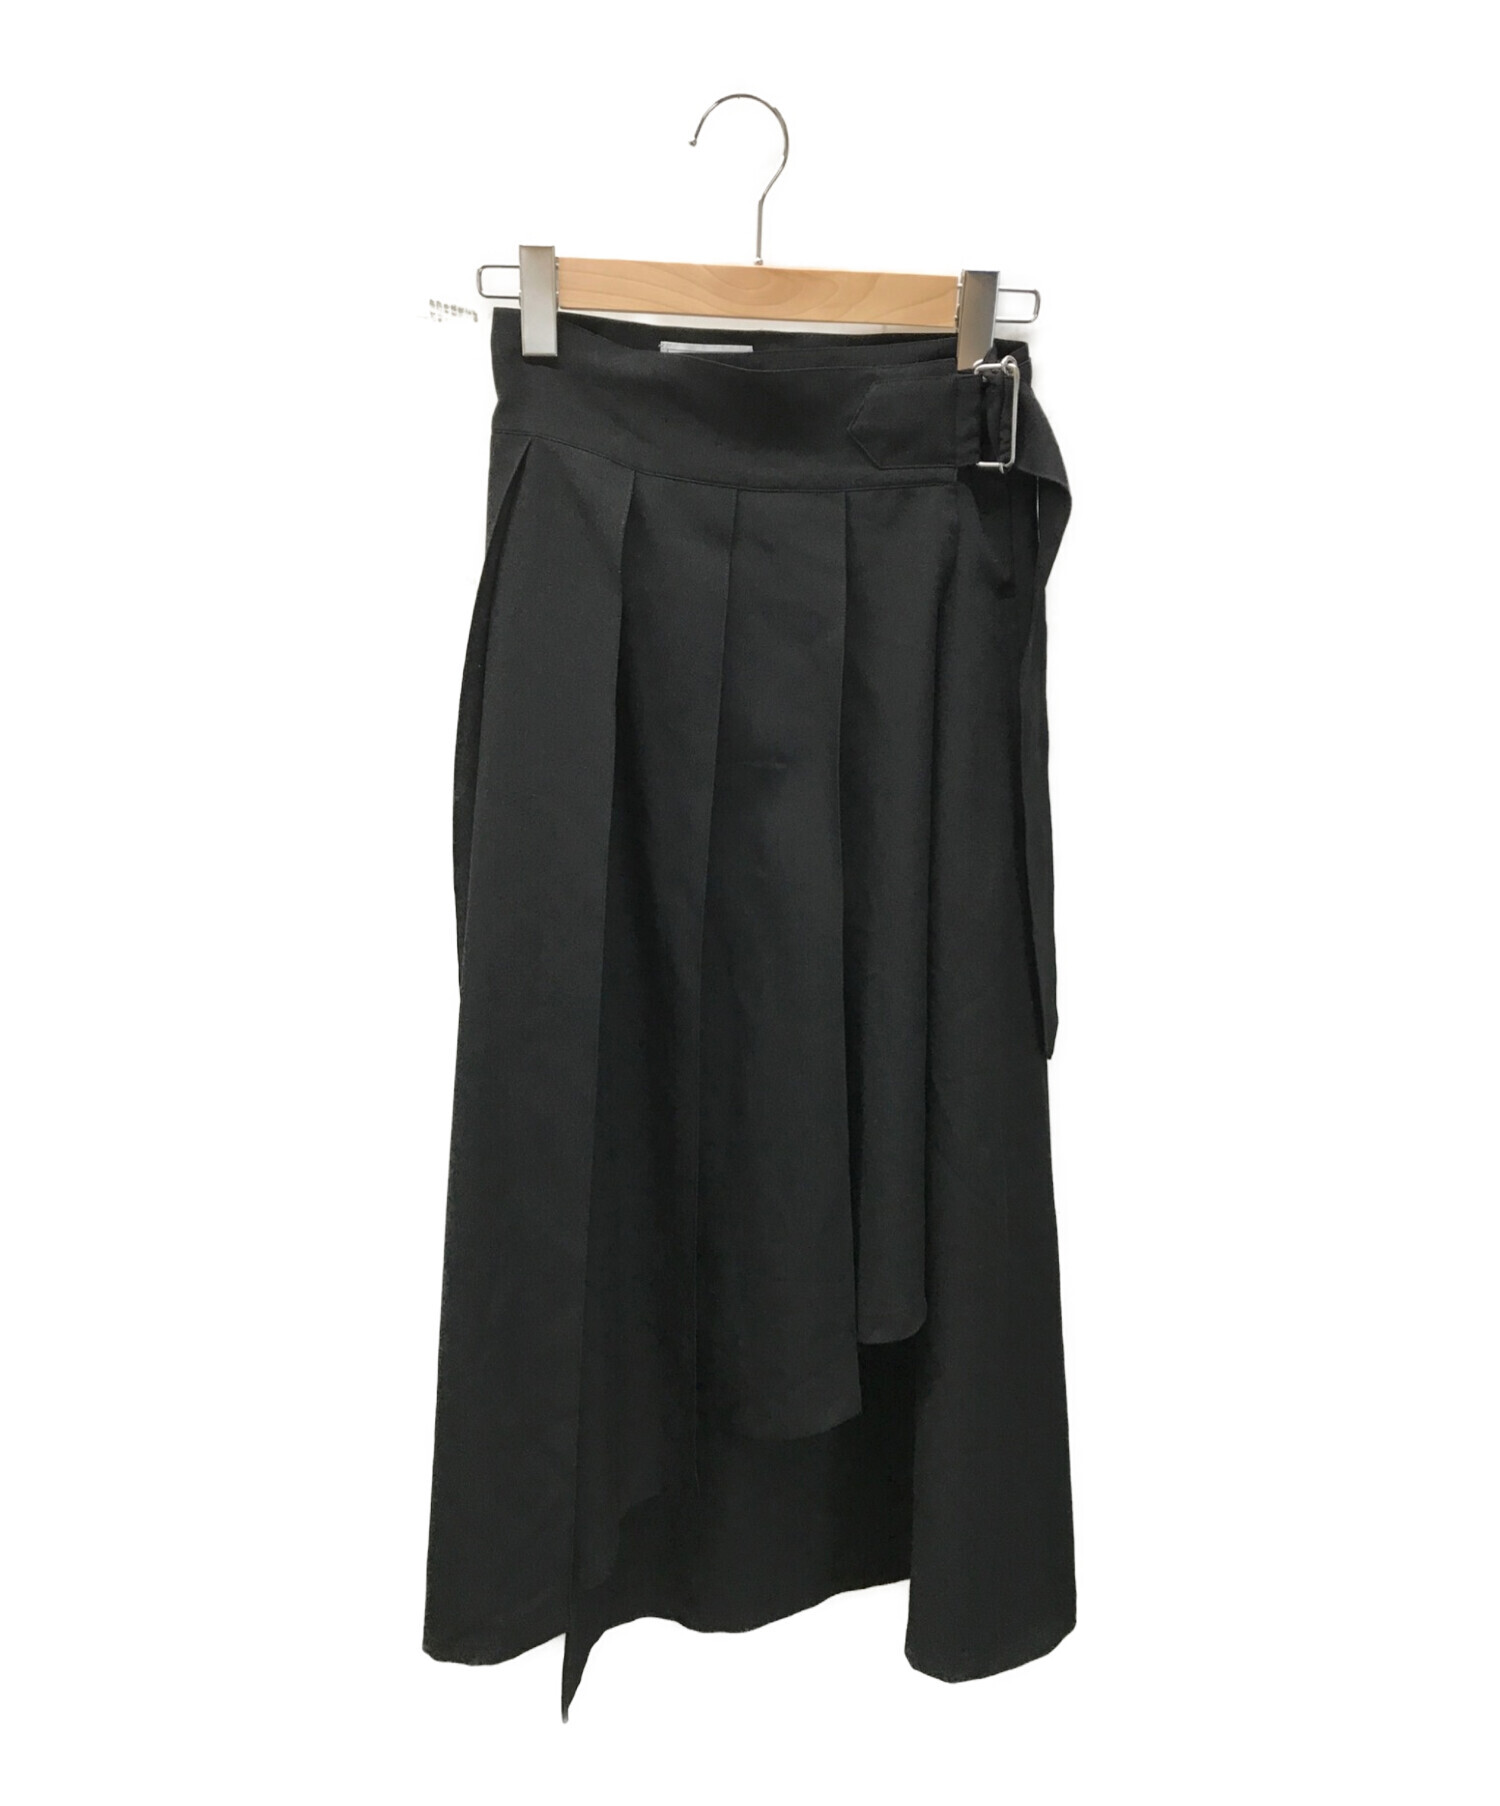 【THE DRESS #08】tender tuck skirt blouse